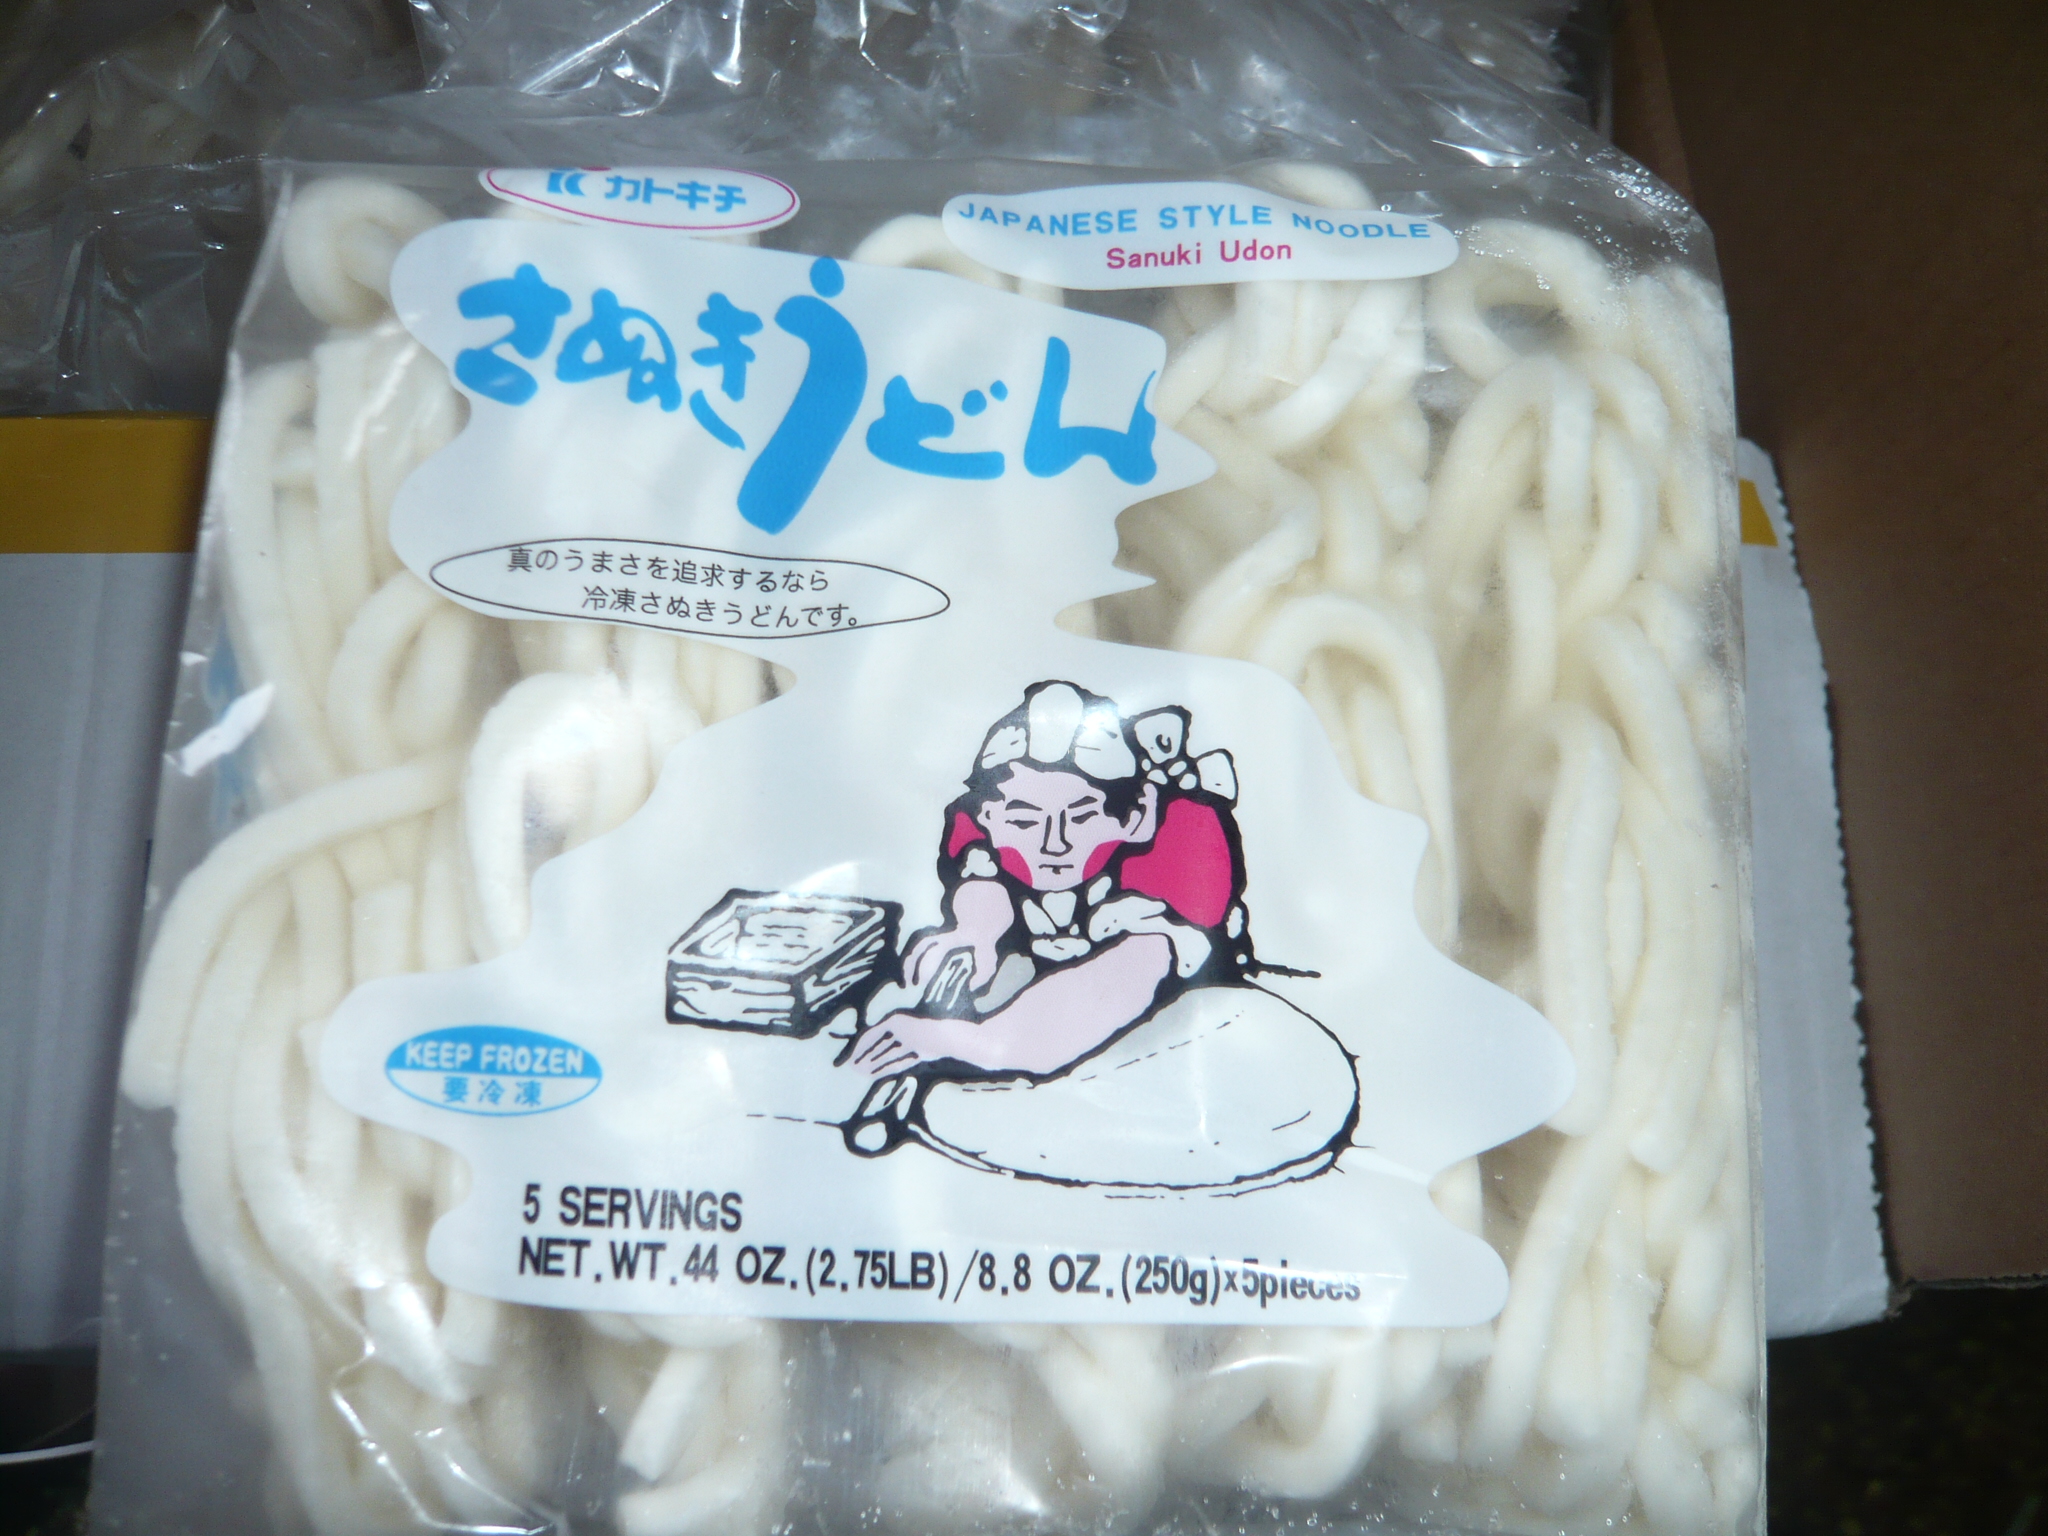 Frozen Udon/Soba noodles